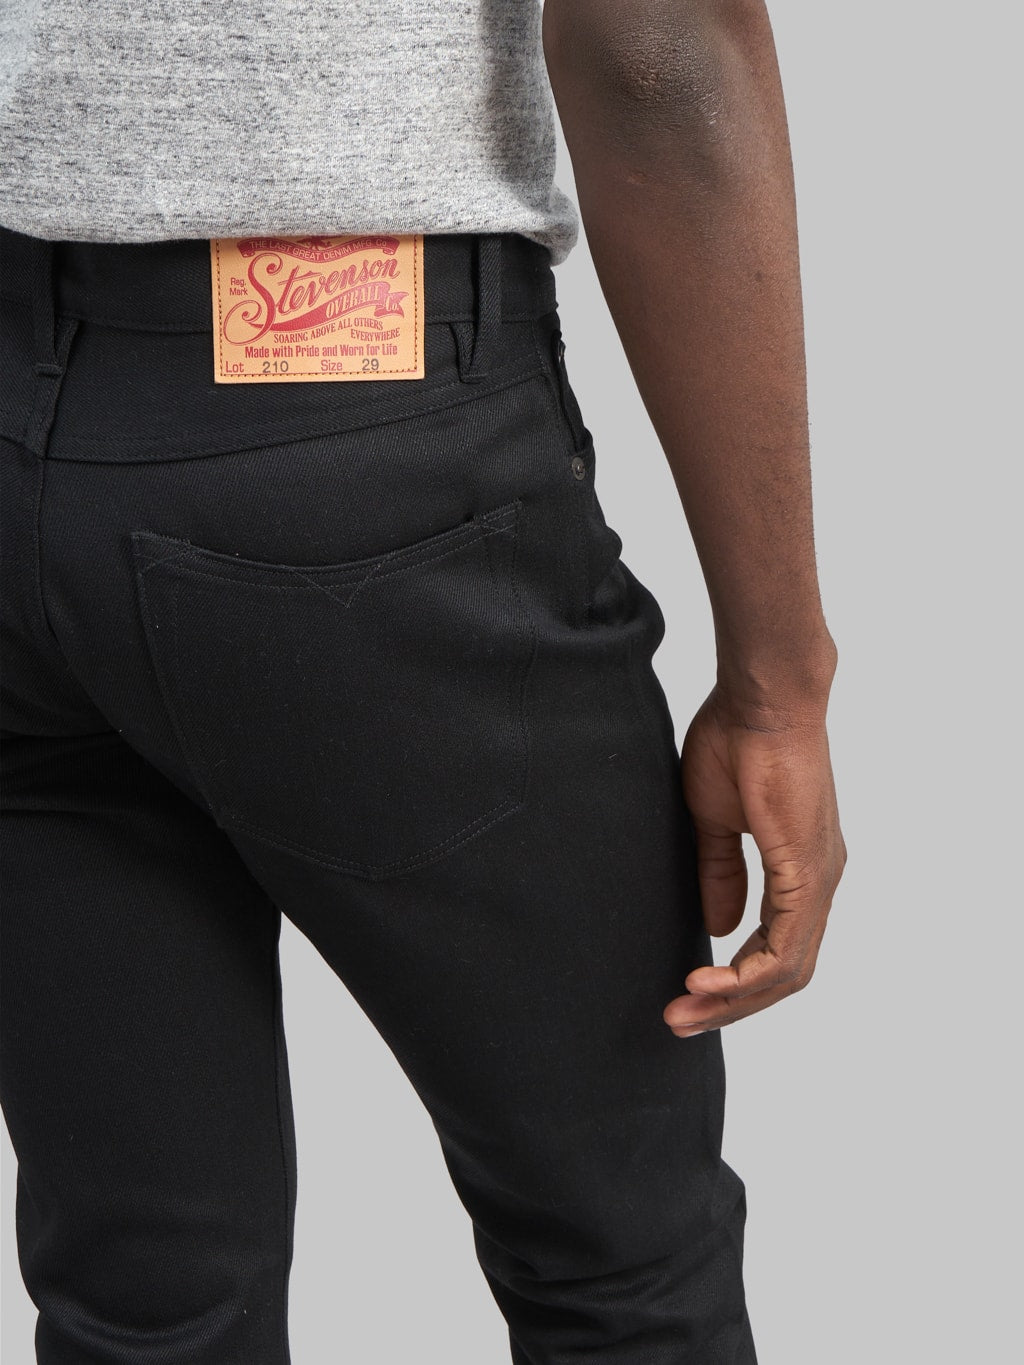 Stevenson Overall Big Sur 210 slim tapered jeans black back pocket